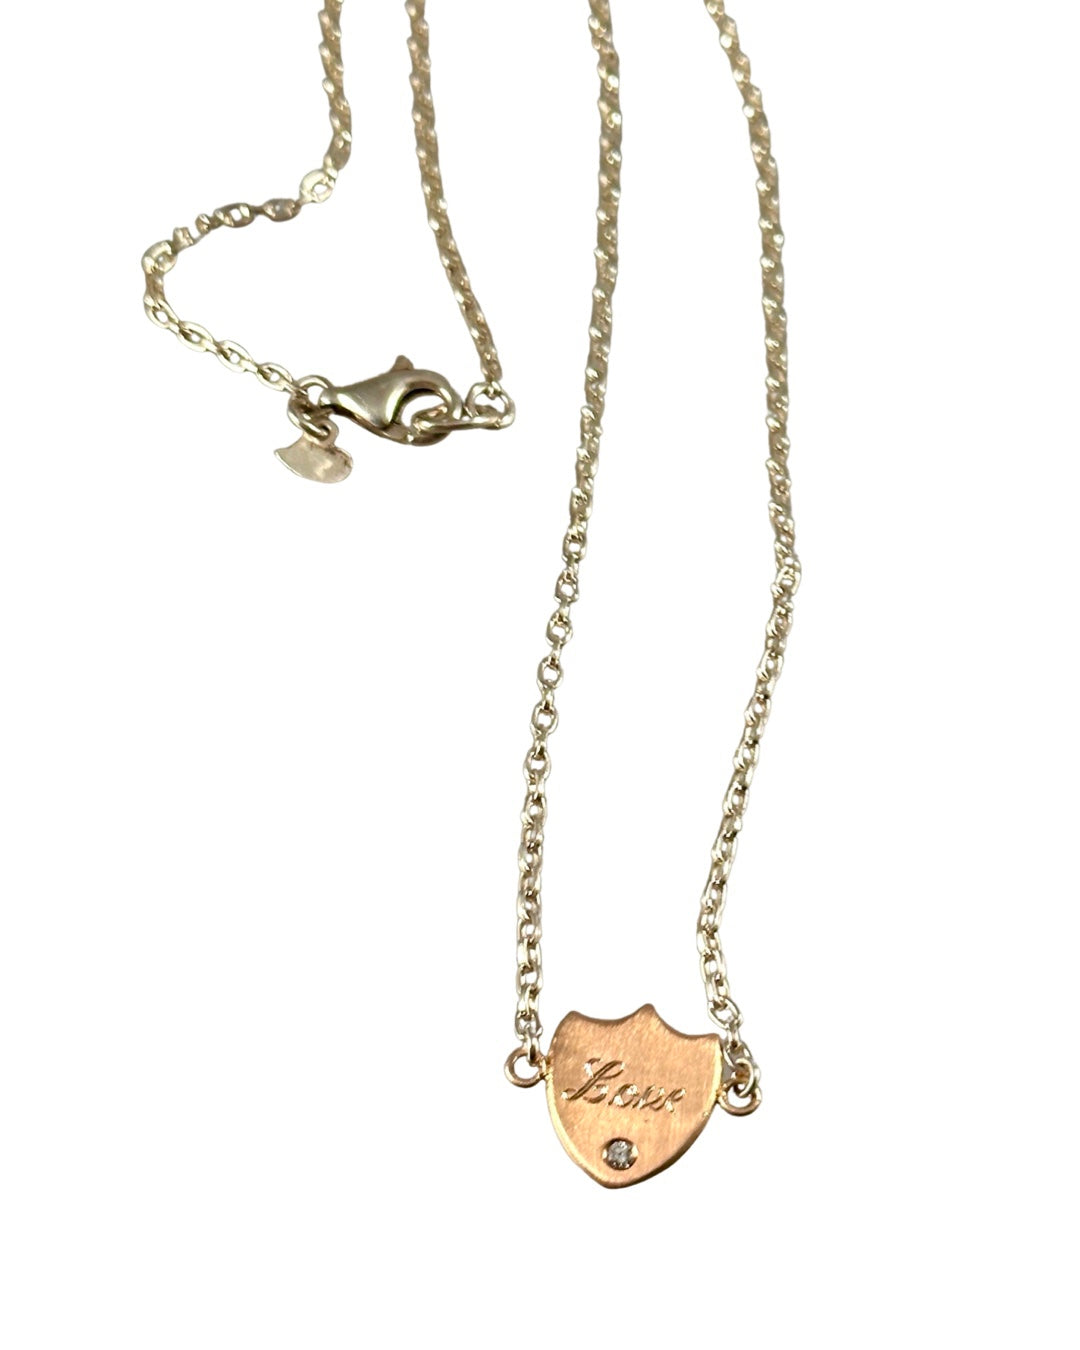 18k Rose Gold ‘Love’ Shield & Diamond Necklace